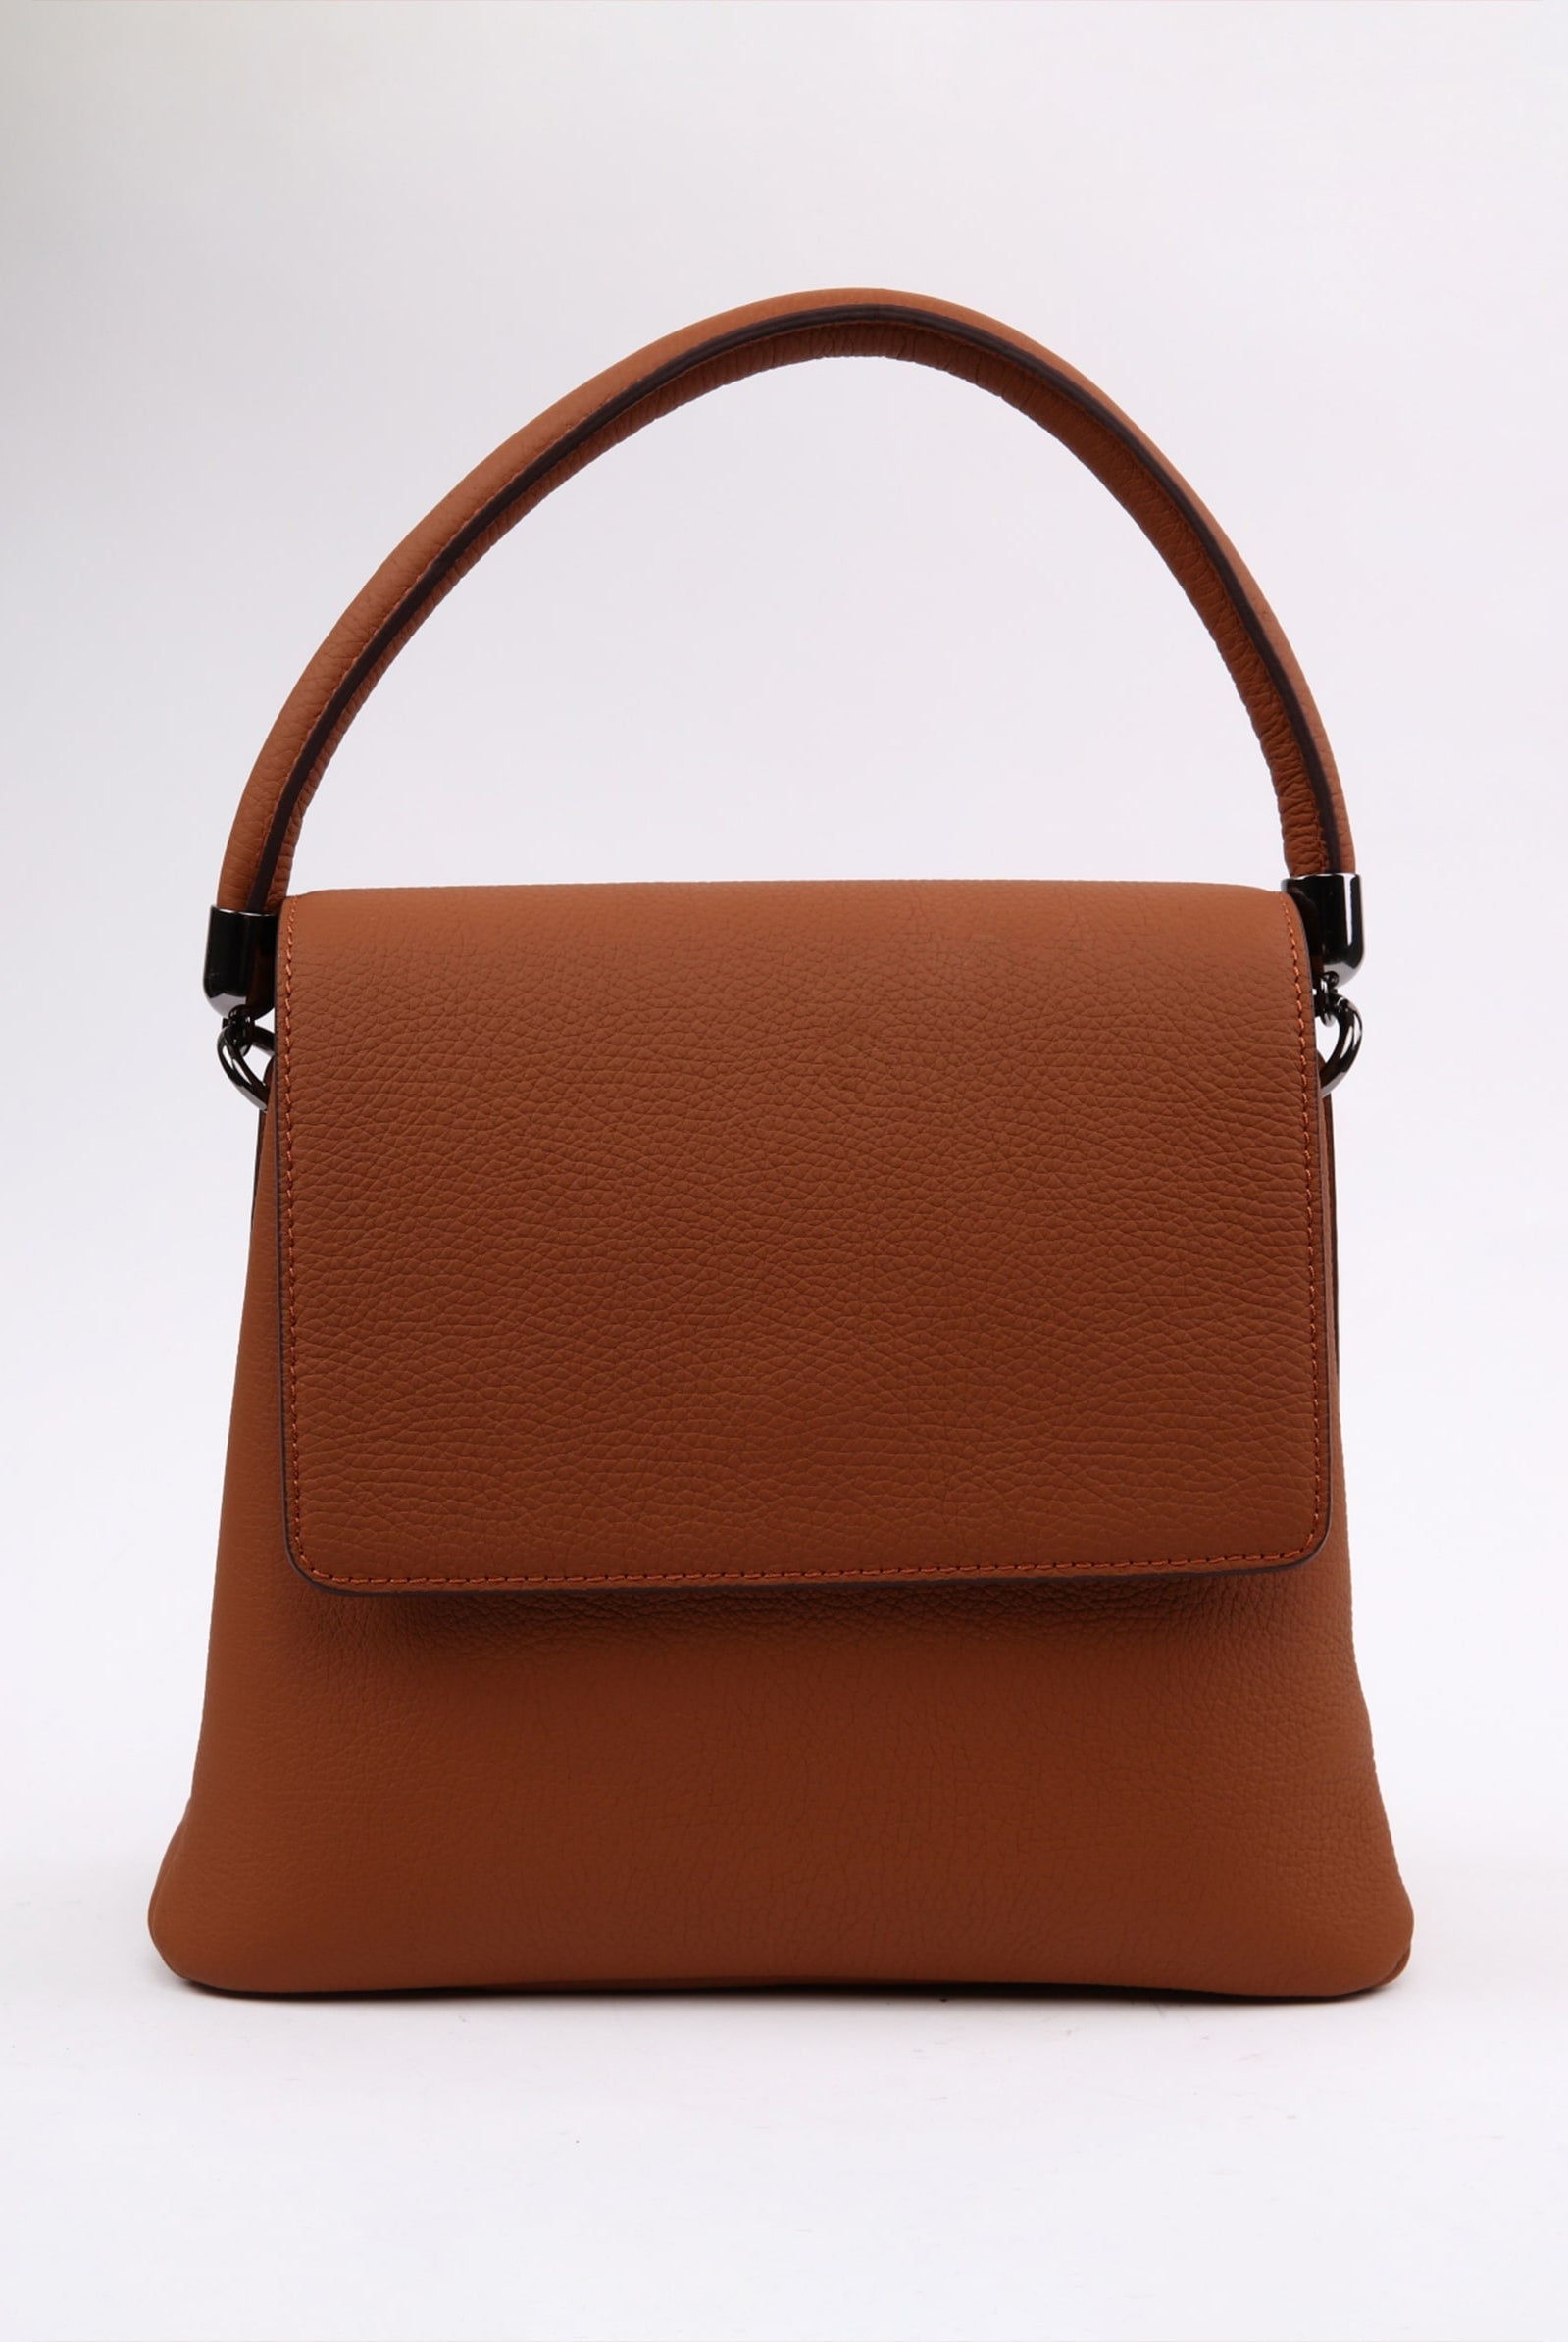 ladies brown leather handbag